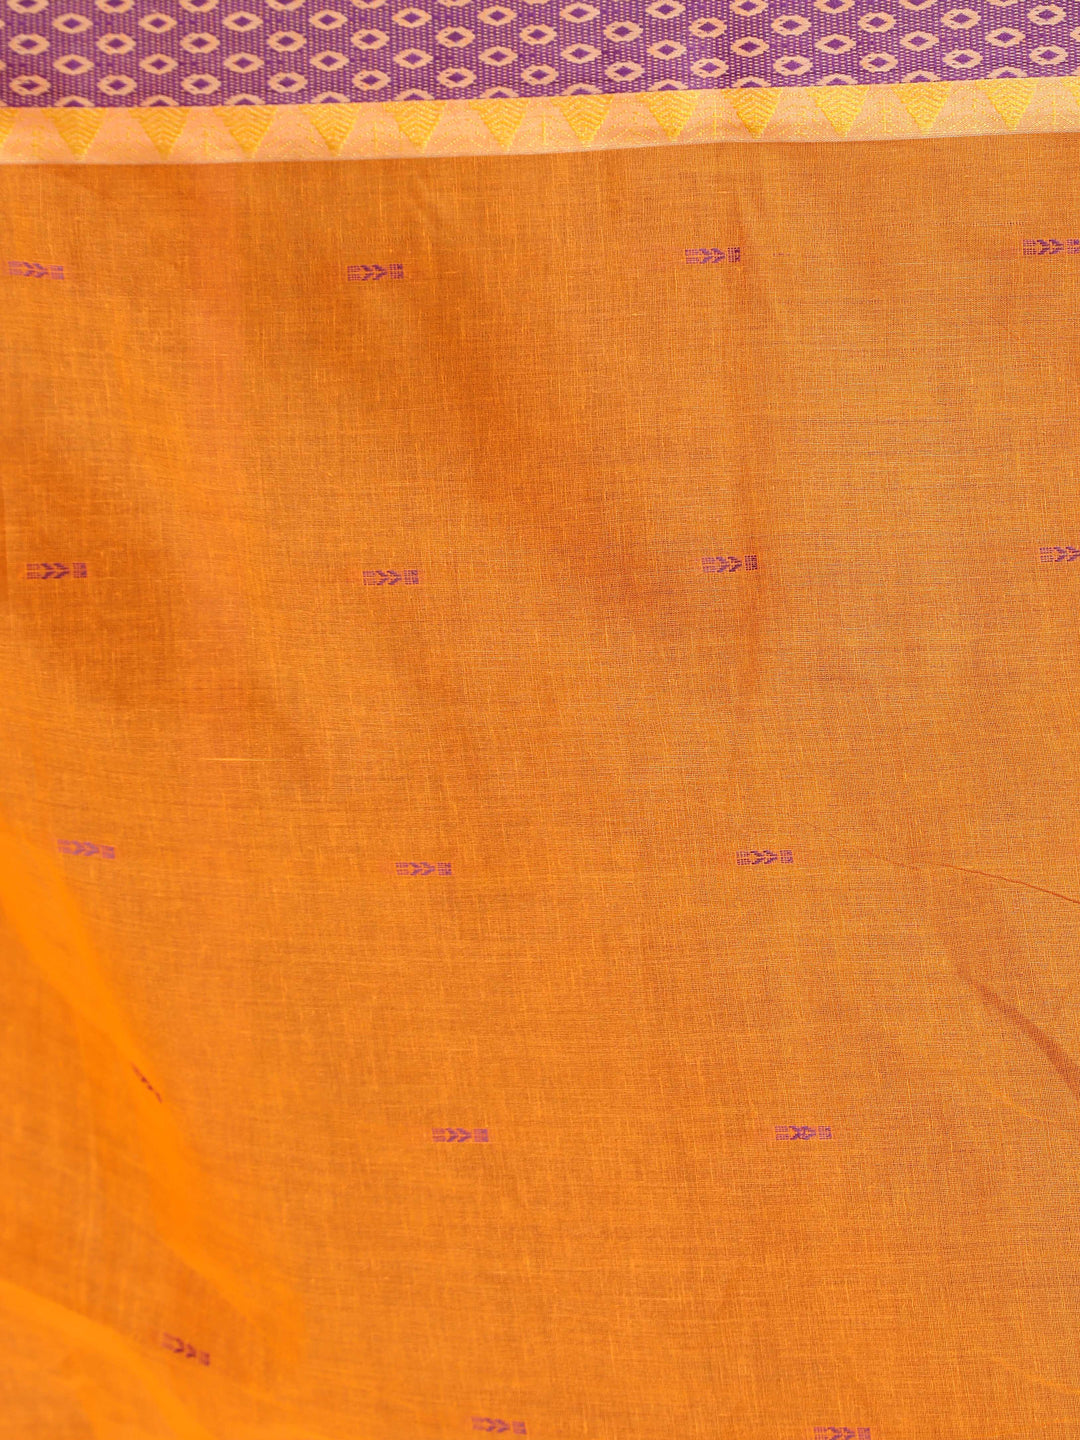 Indethnic Yellow Woven Design Saree - Saree Detail View